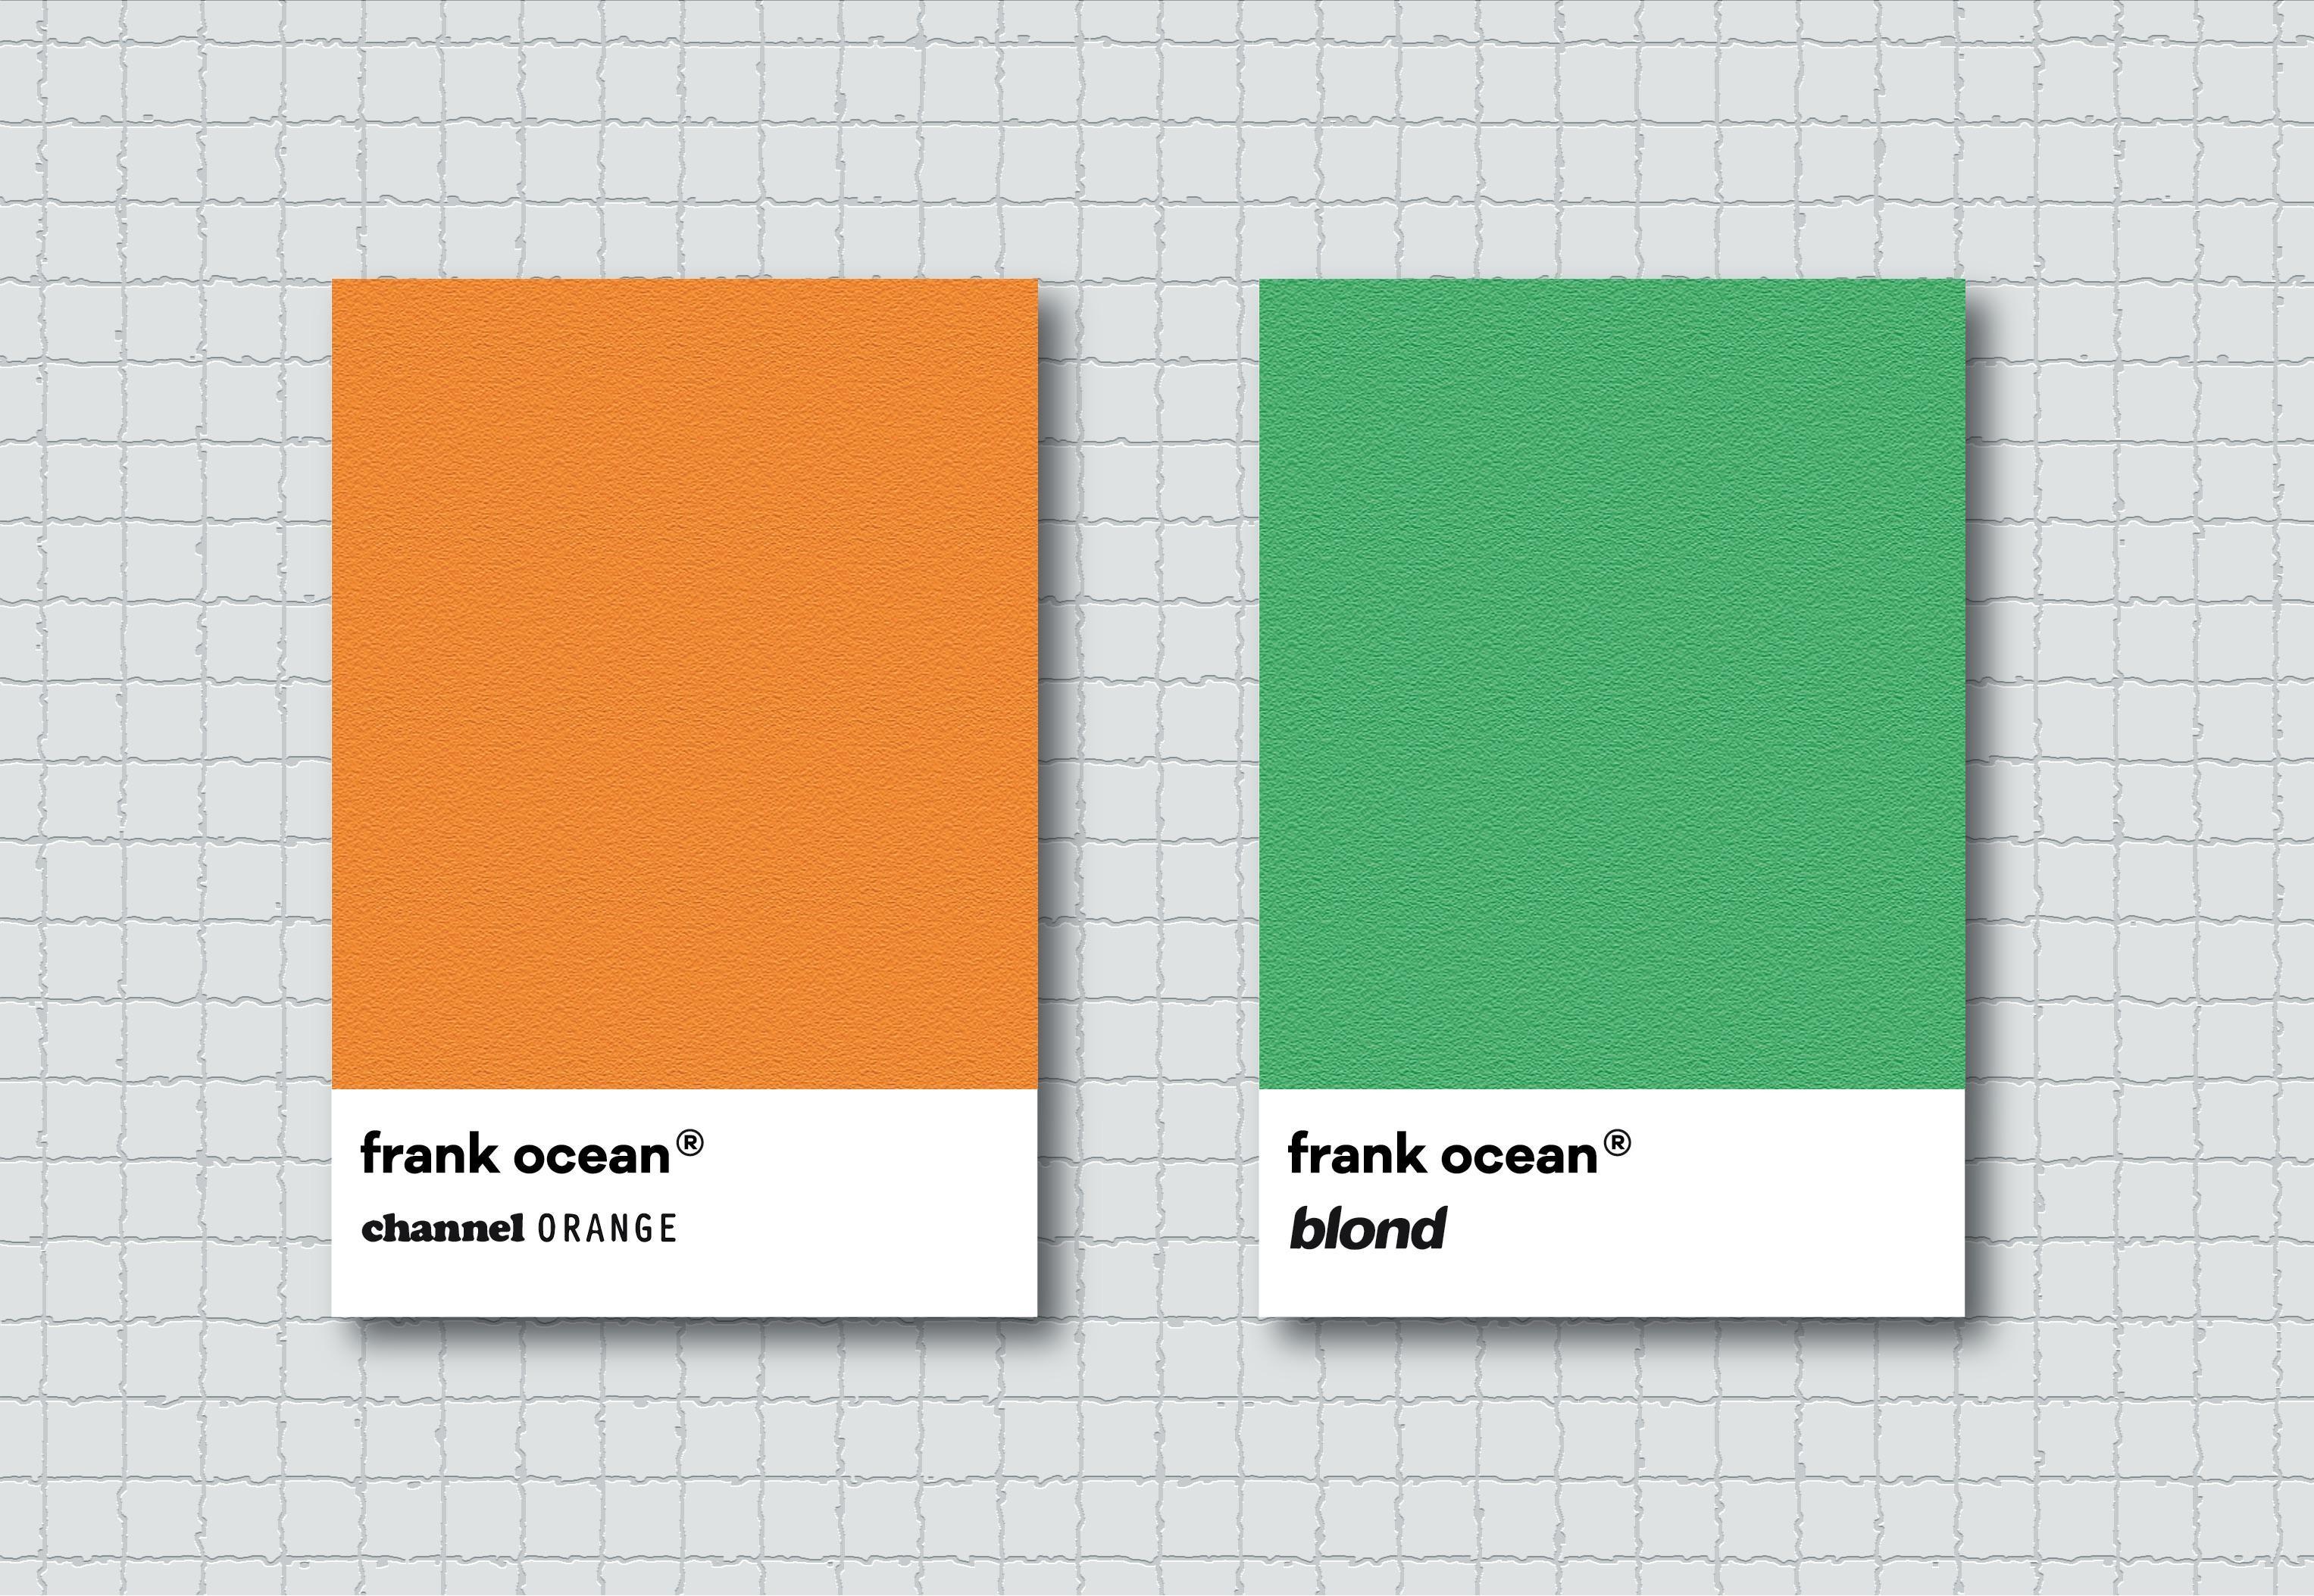 Download Wallpaper - Frank Ocean Blonde Mac Backgrounds , HD Wallpaper & Backgrounds